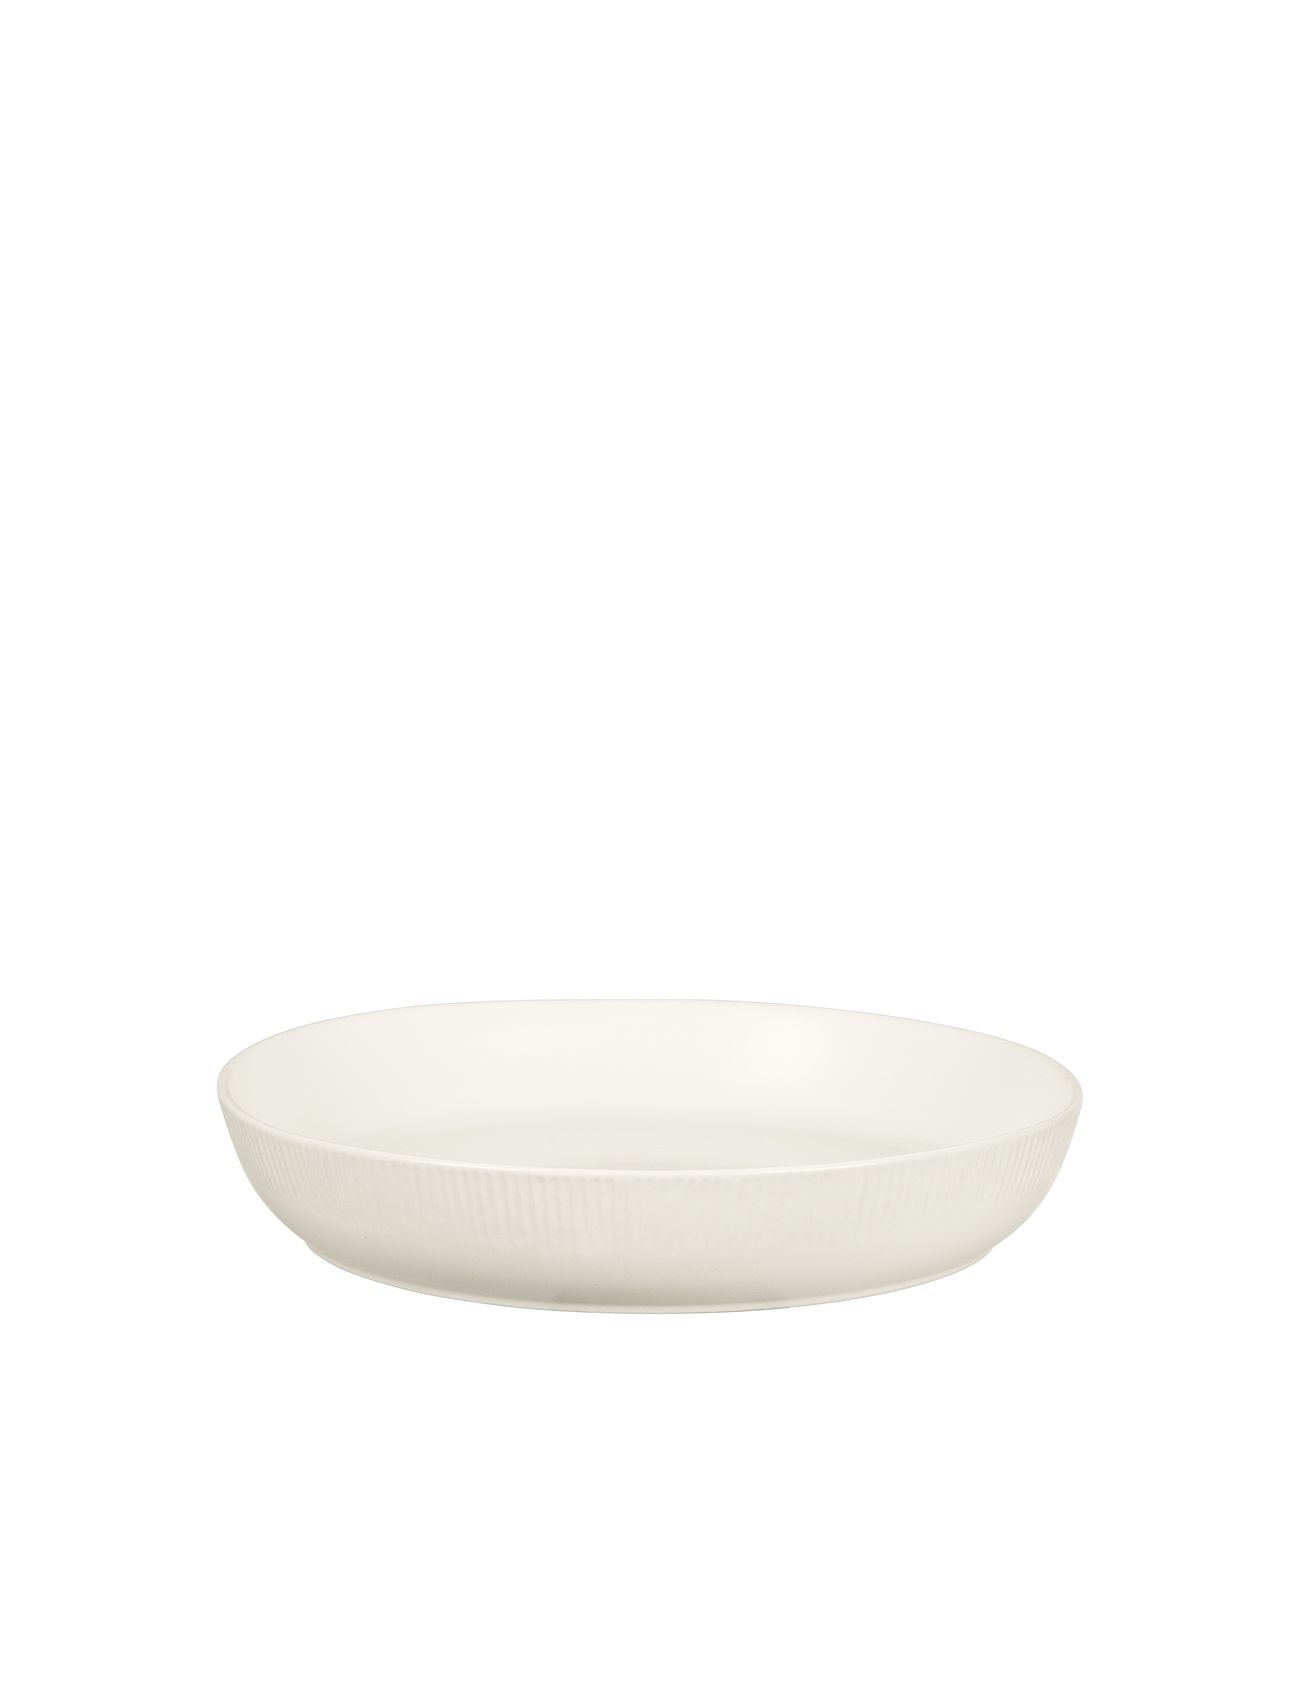 Sandvig Bowl Home Tableware Bowls & Serving Dishes Serving Bowls White Broste Copenhagen